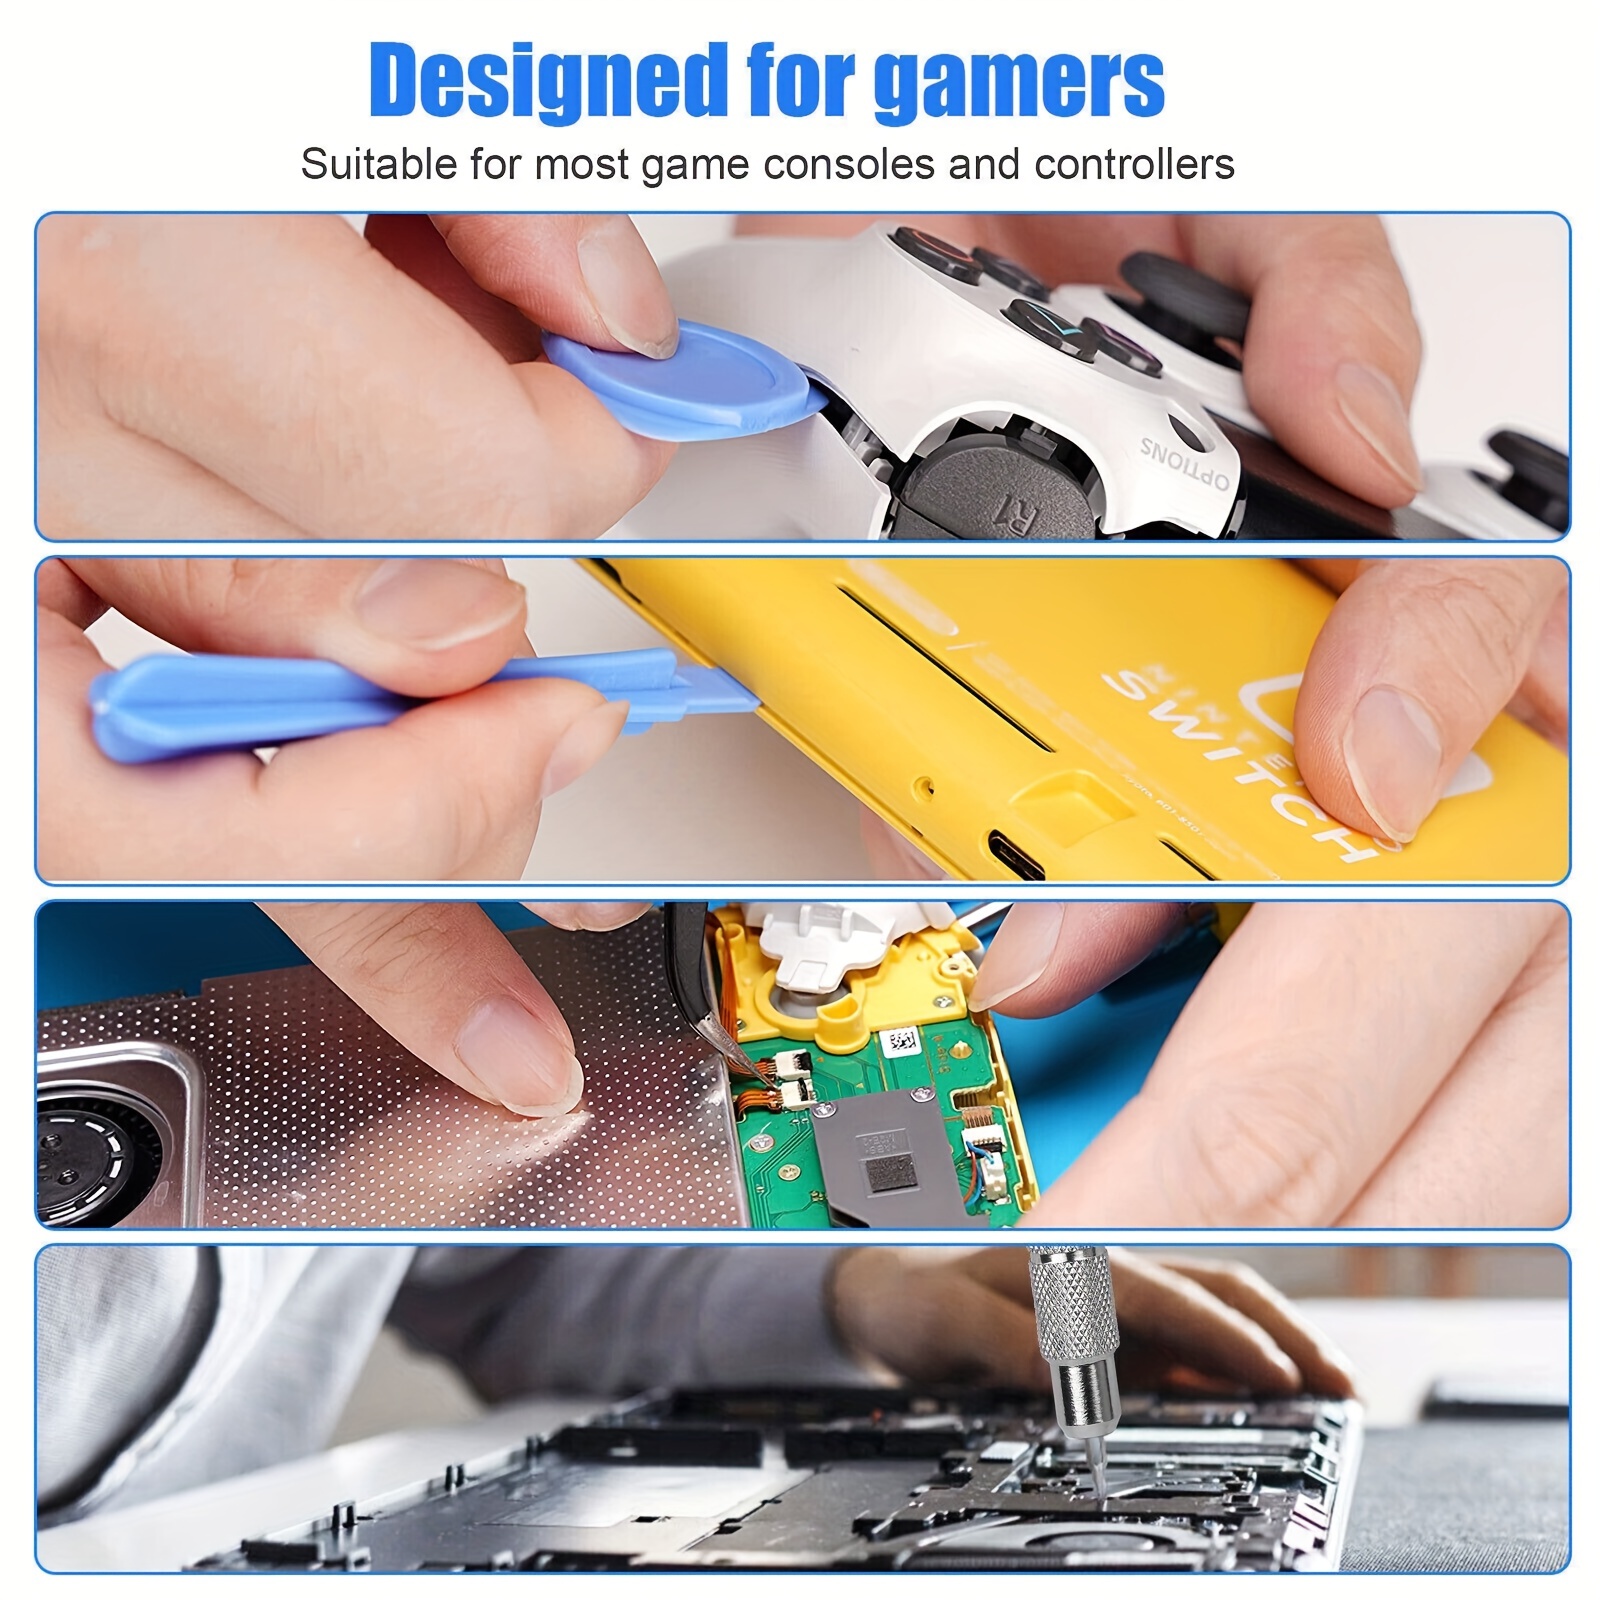 JAOYSTII Kit d'outils de nettoyage et de réparation pour PS4 PS5